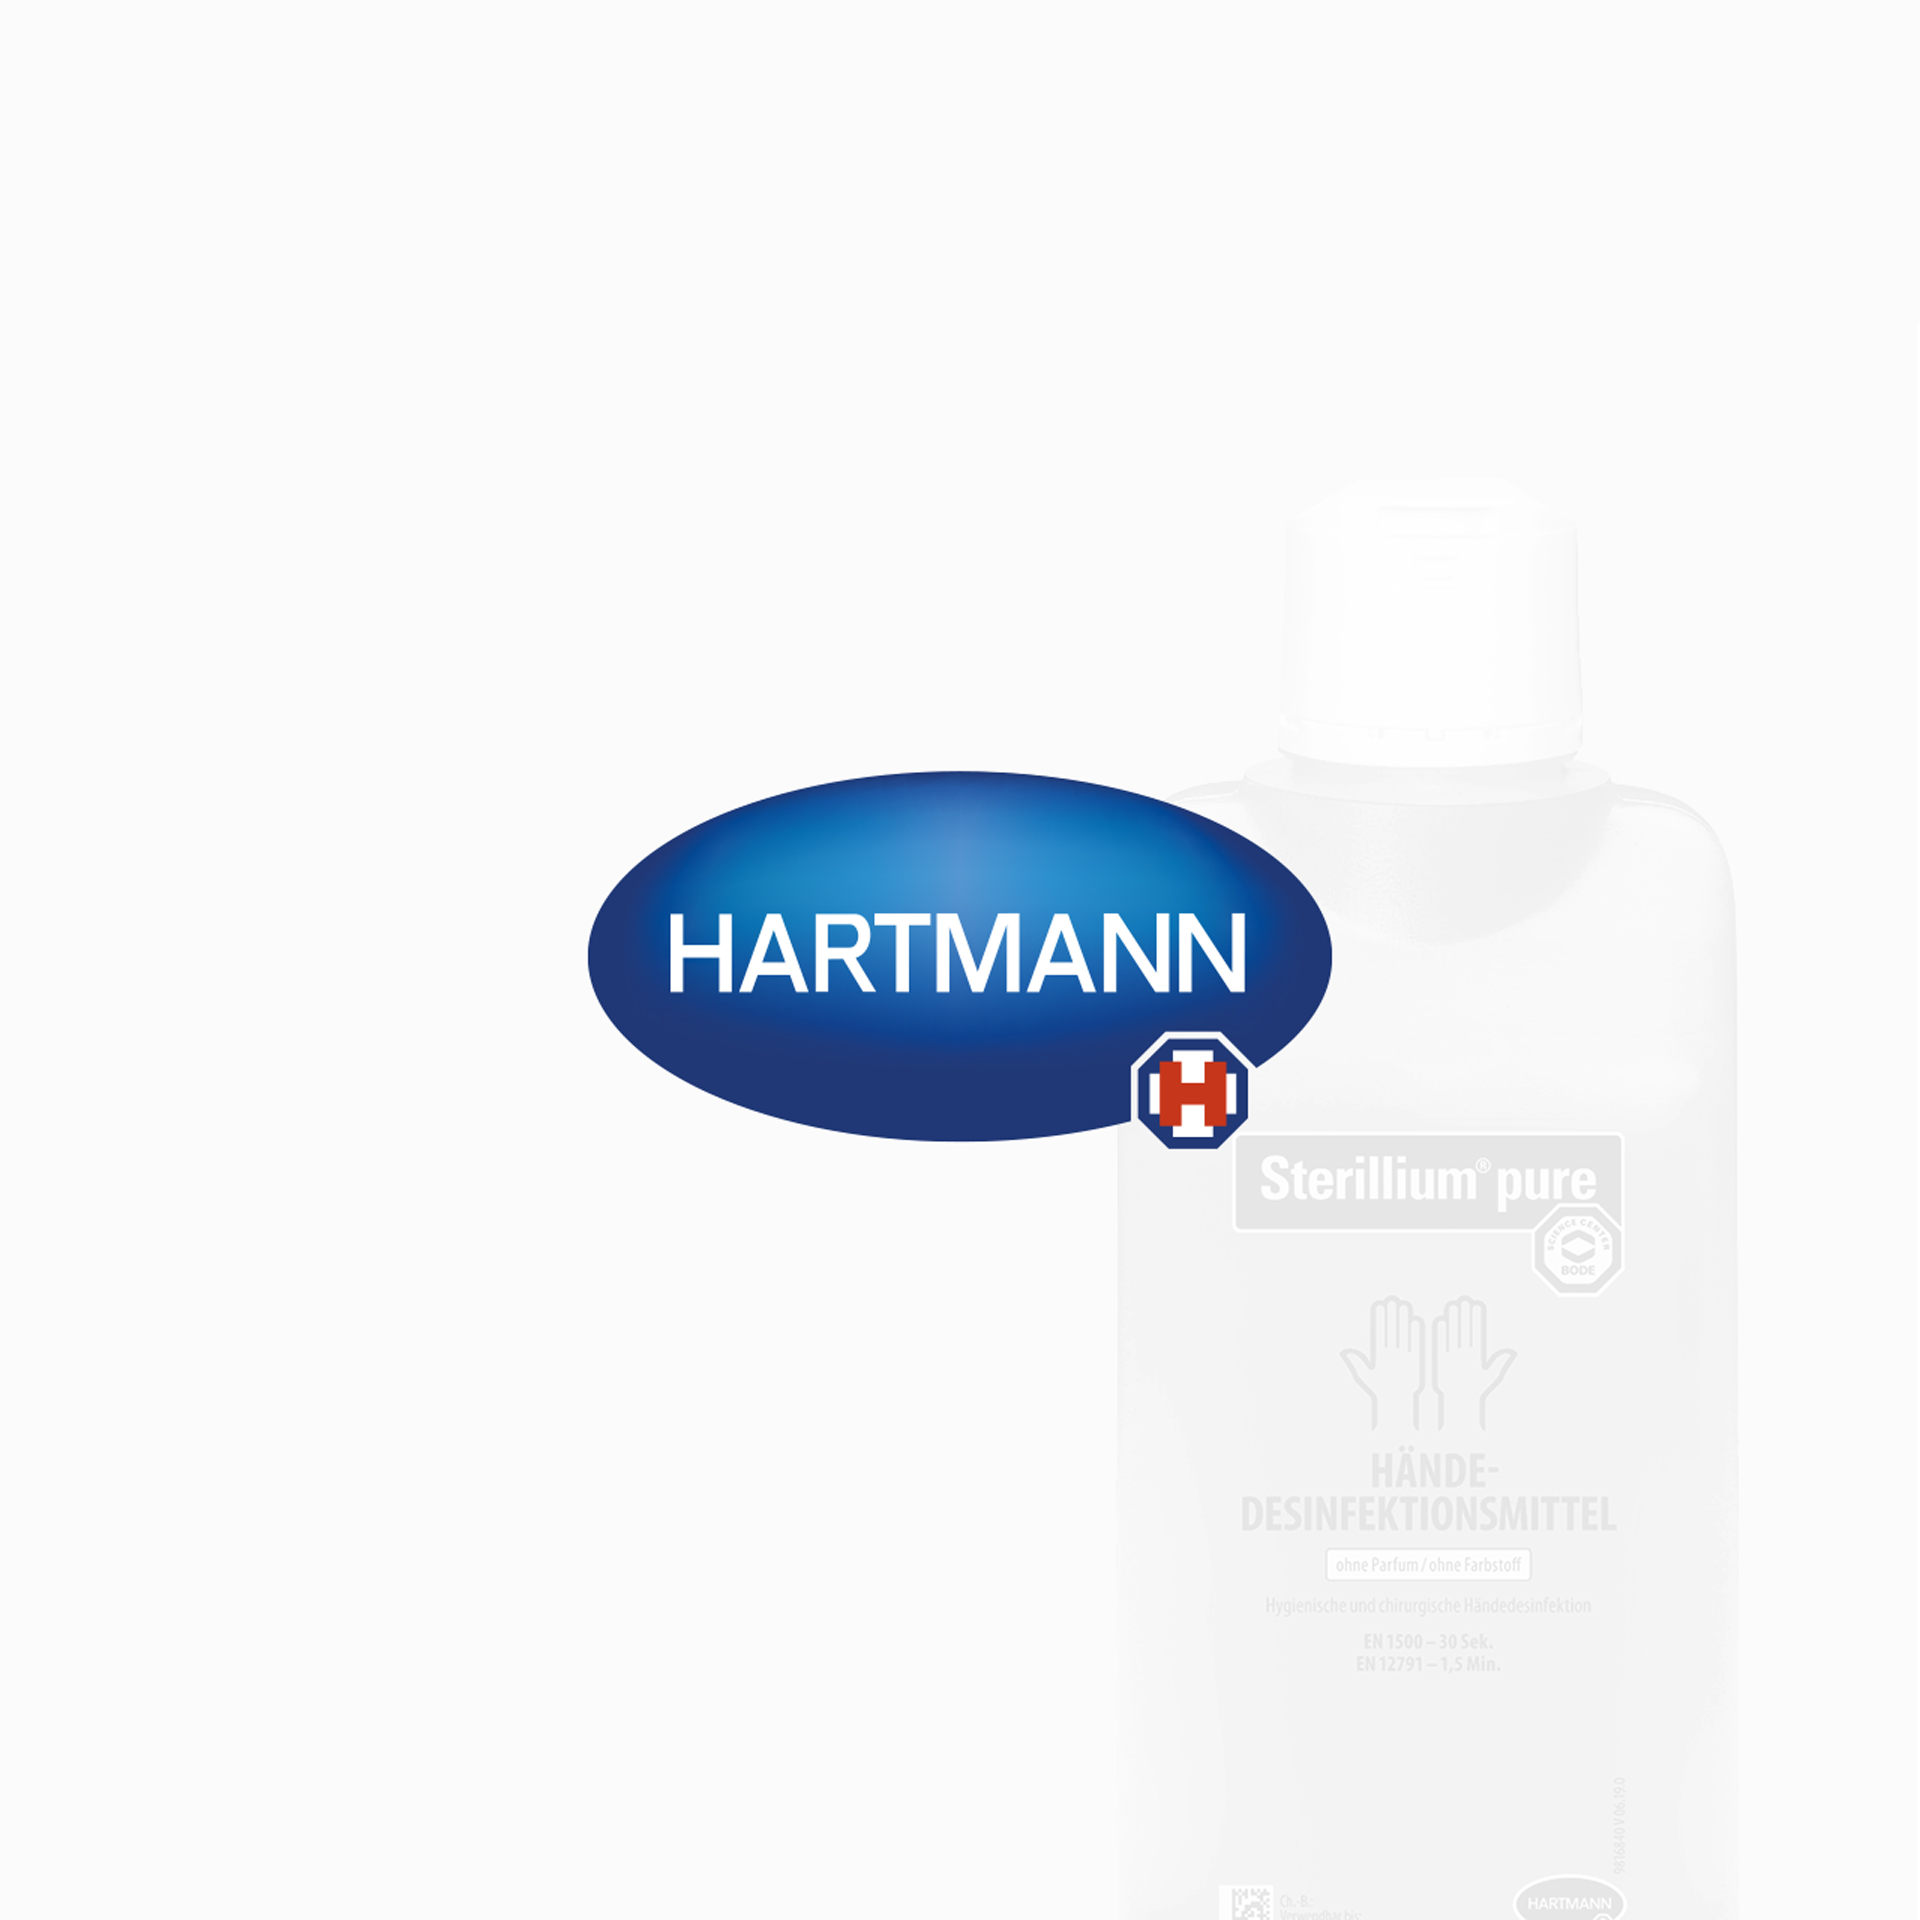 Referenz Hartmann